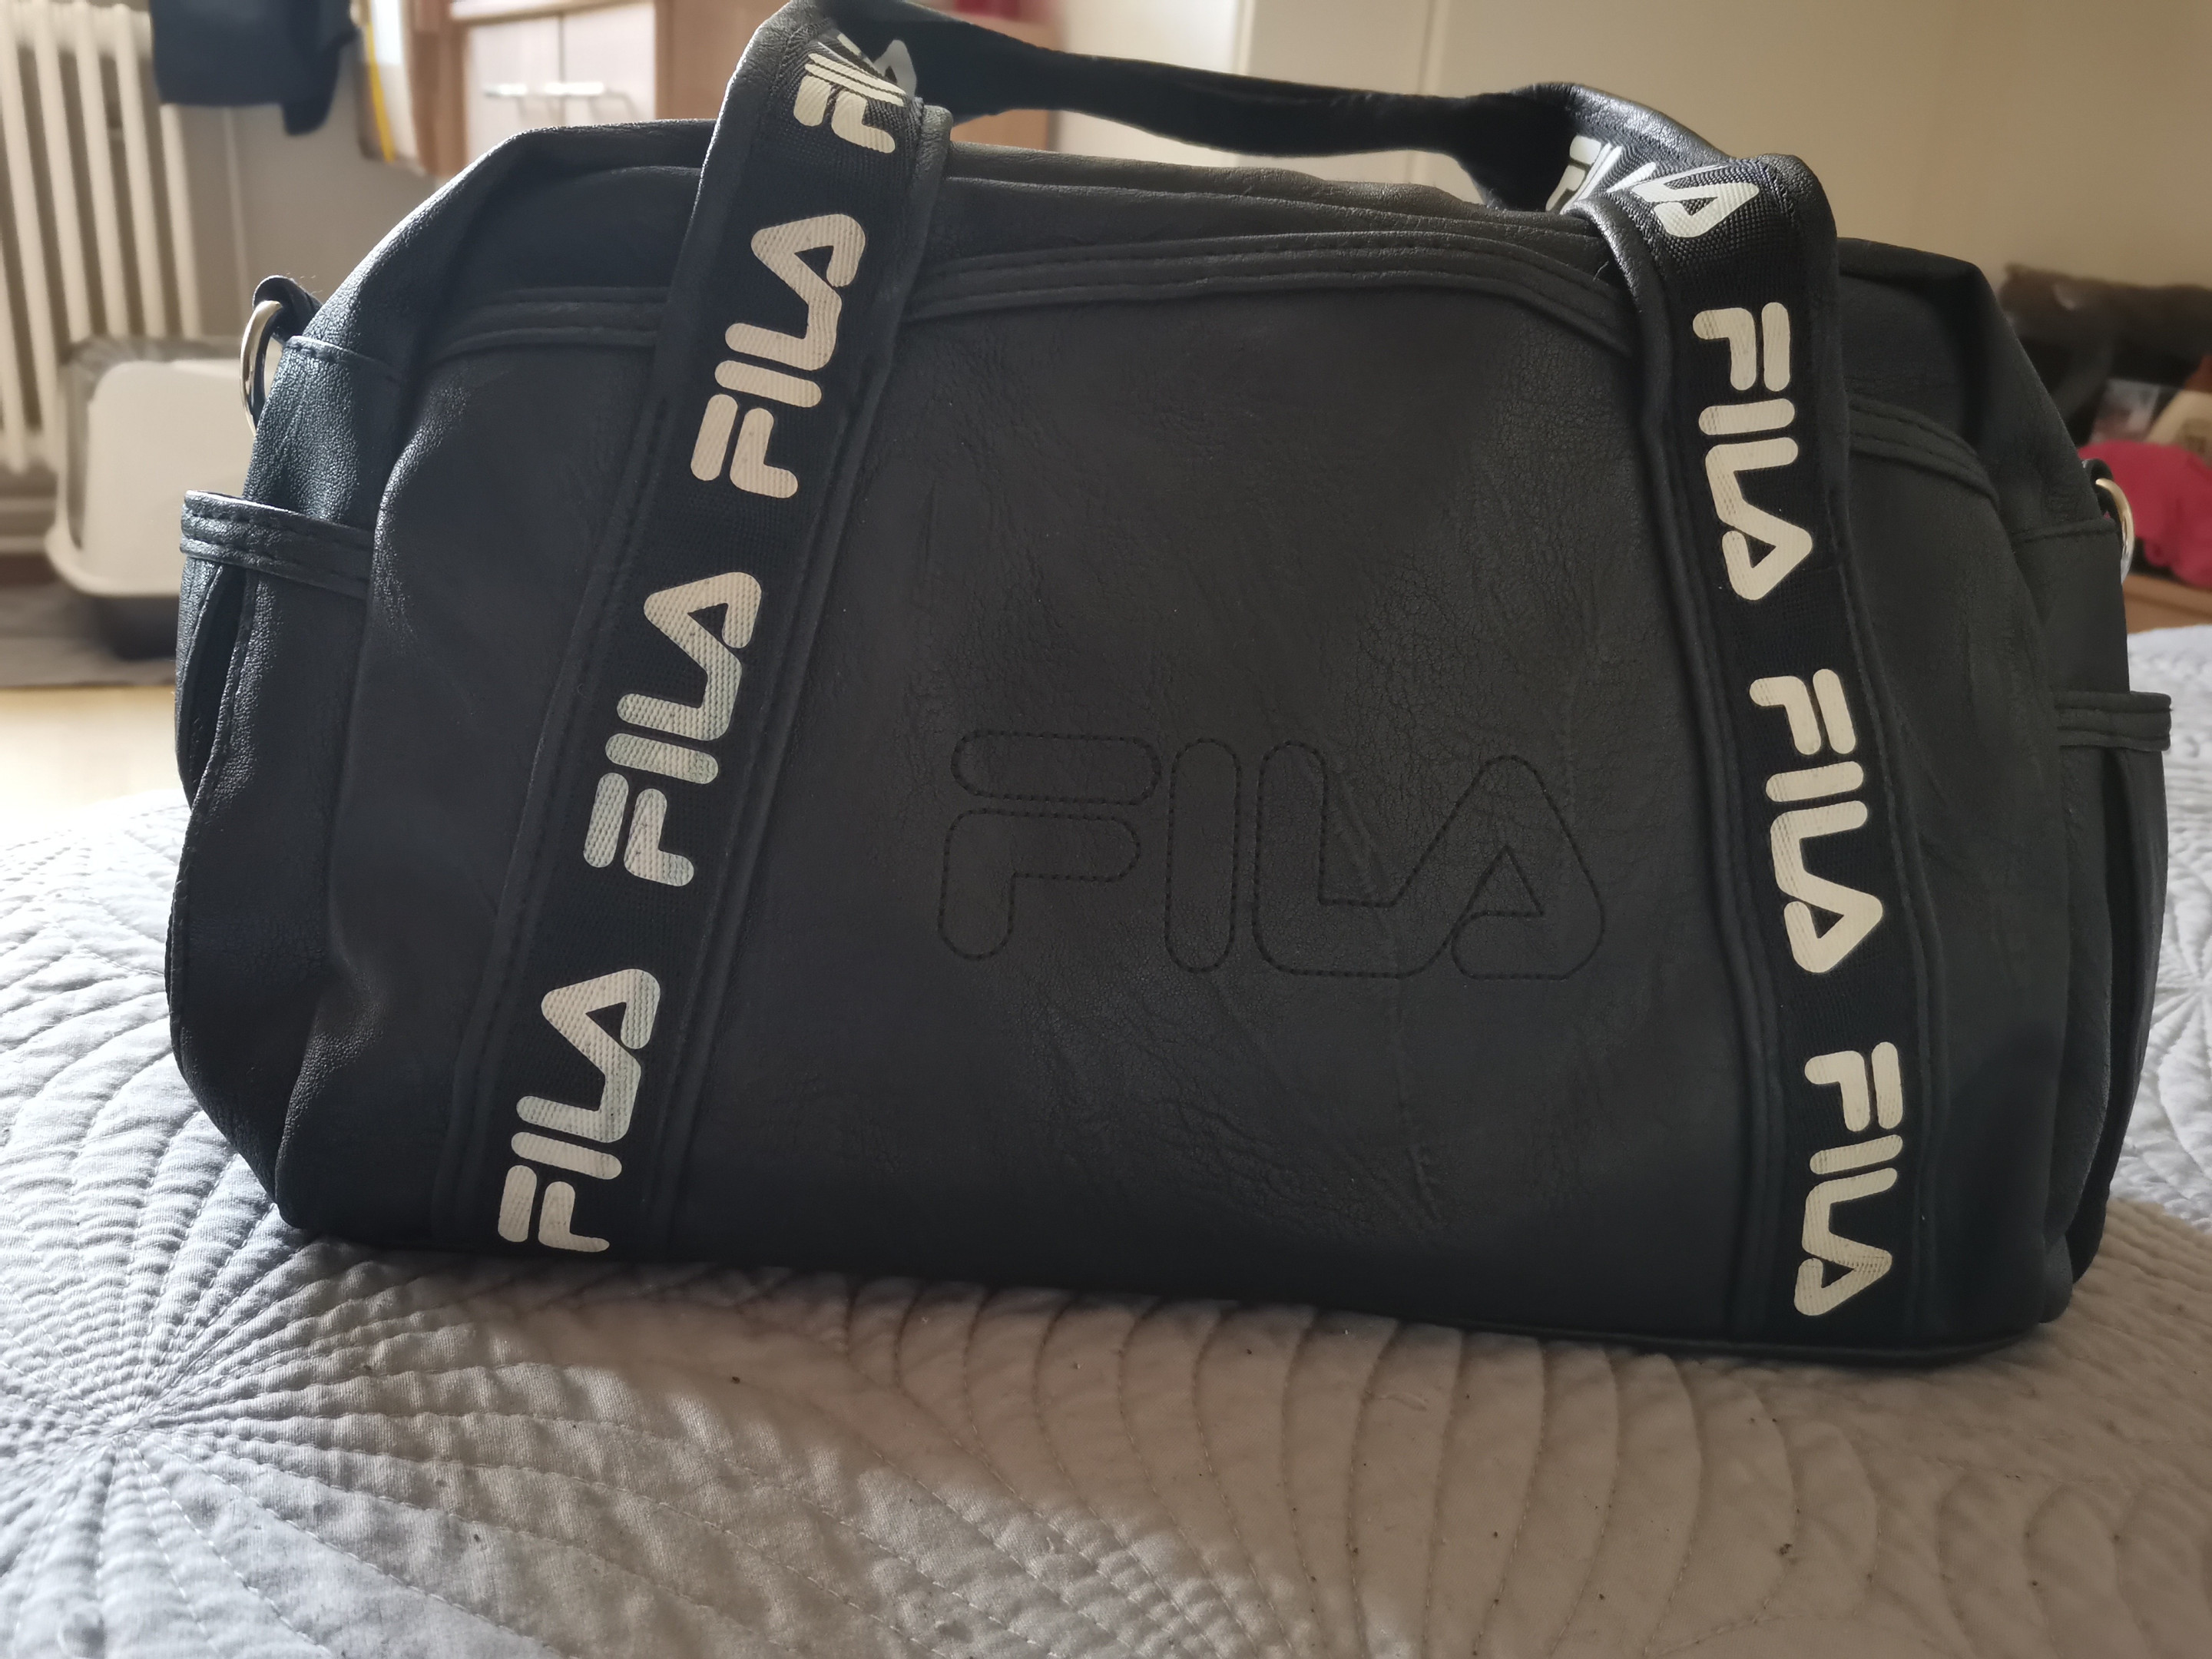 Stylish Fila Shoulder Bag for Travel